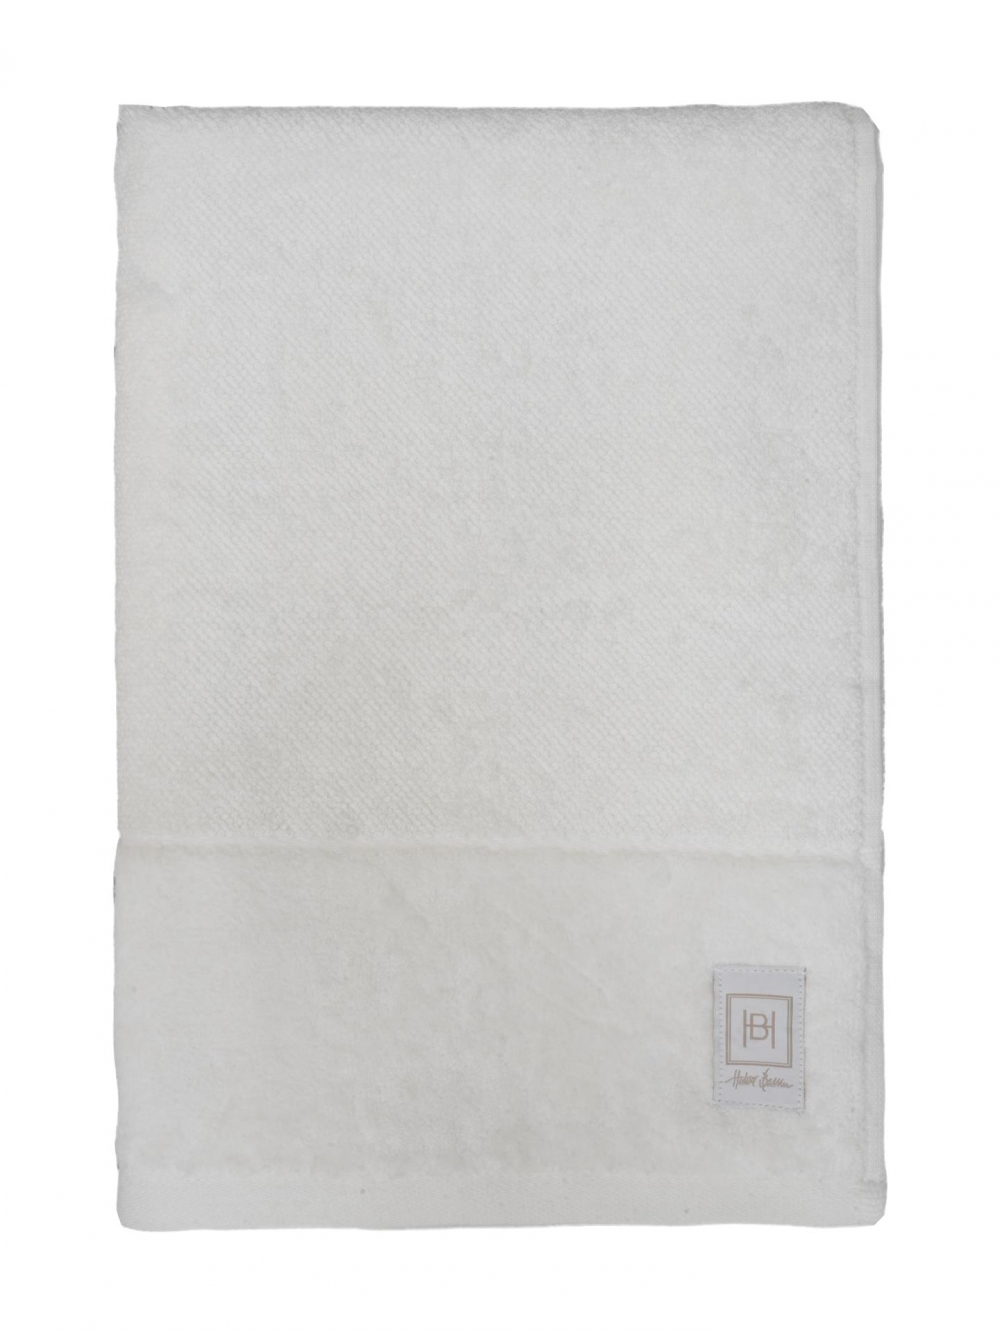 Nydelige håndklær i egyptisk bomull med vakker kant i viskosevelur i Halvor Bakkes vakre fargepalett.

 

Produktinformasjon

38 % Egyptisk bomull, 38 % viskose og 24 % bomull
600 gsm
Tilhørende badematter og badekåper
Kommer i størrelsene 50x100, 70x140 